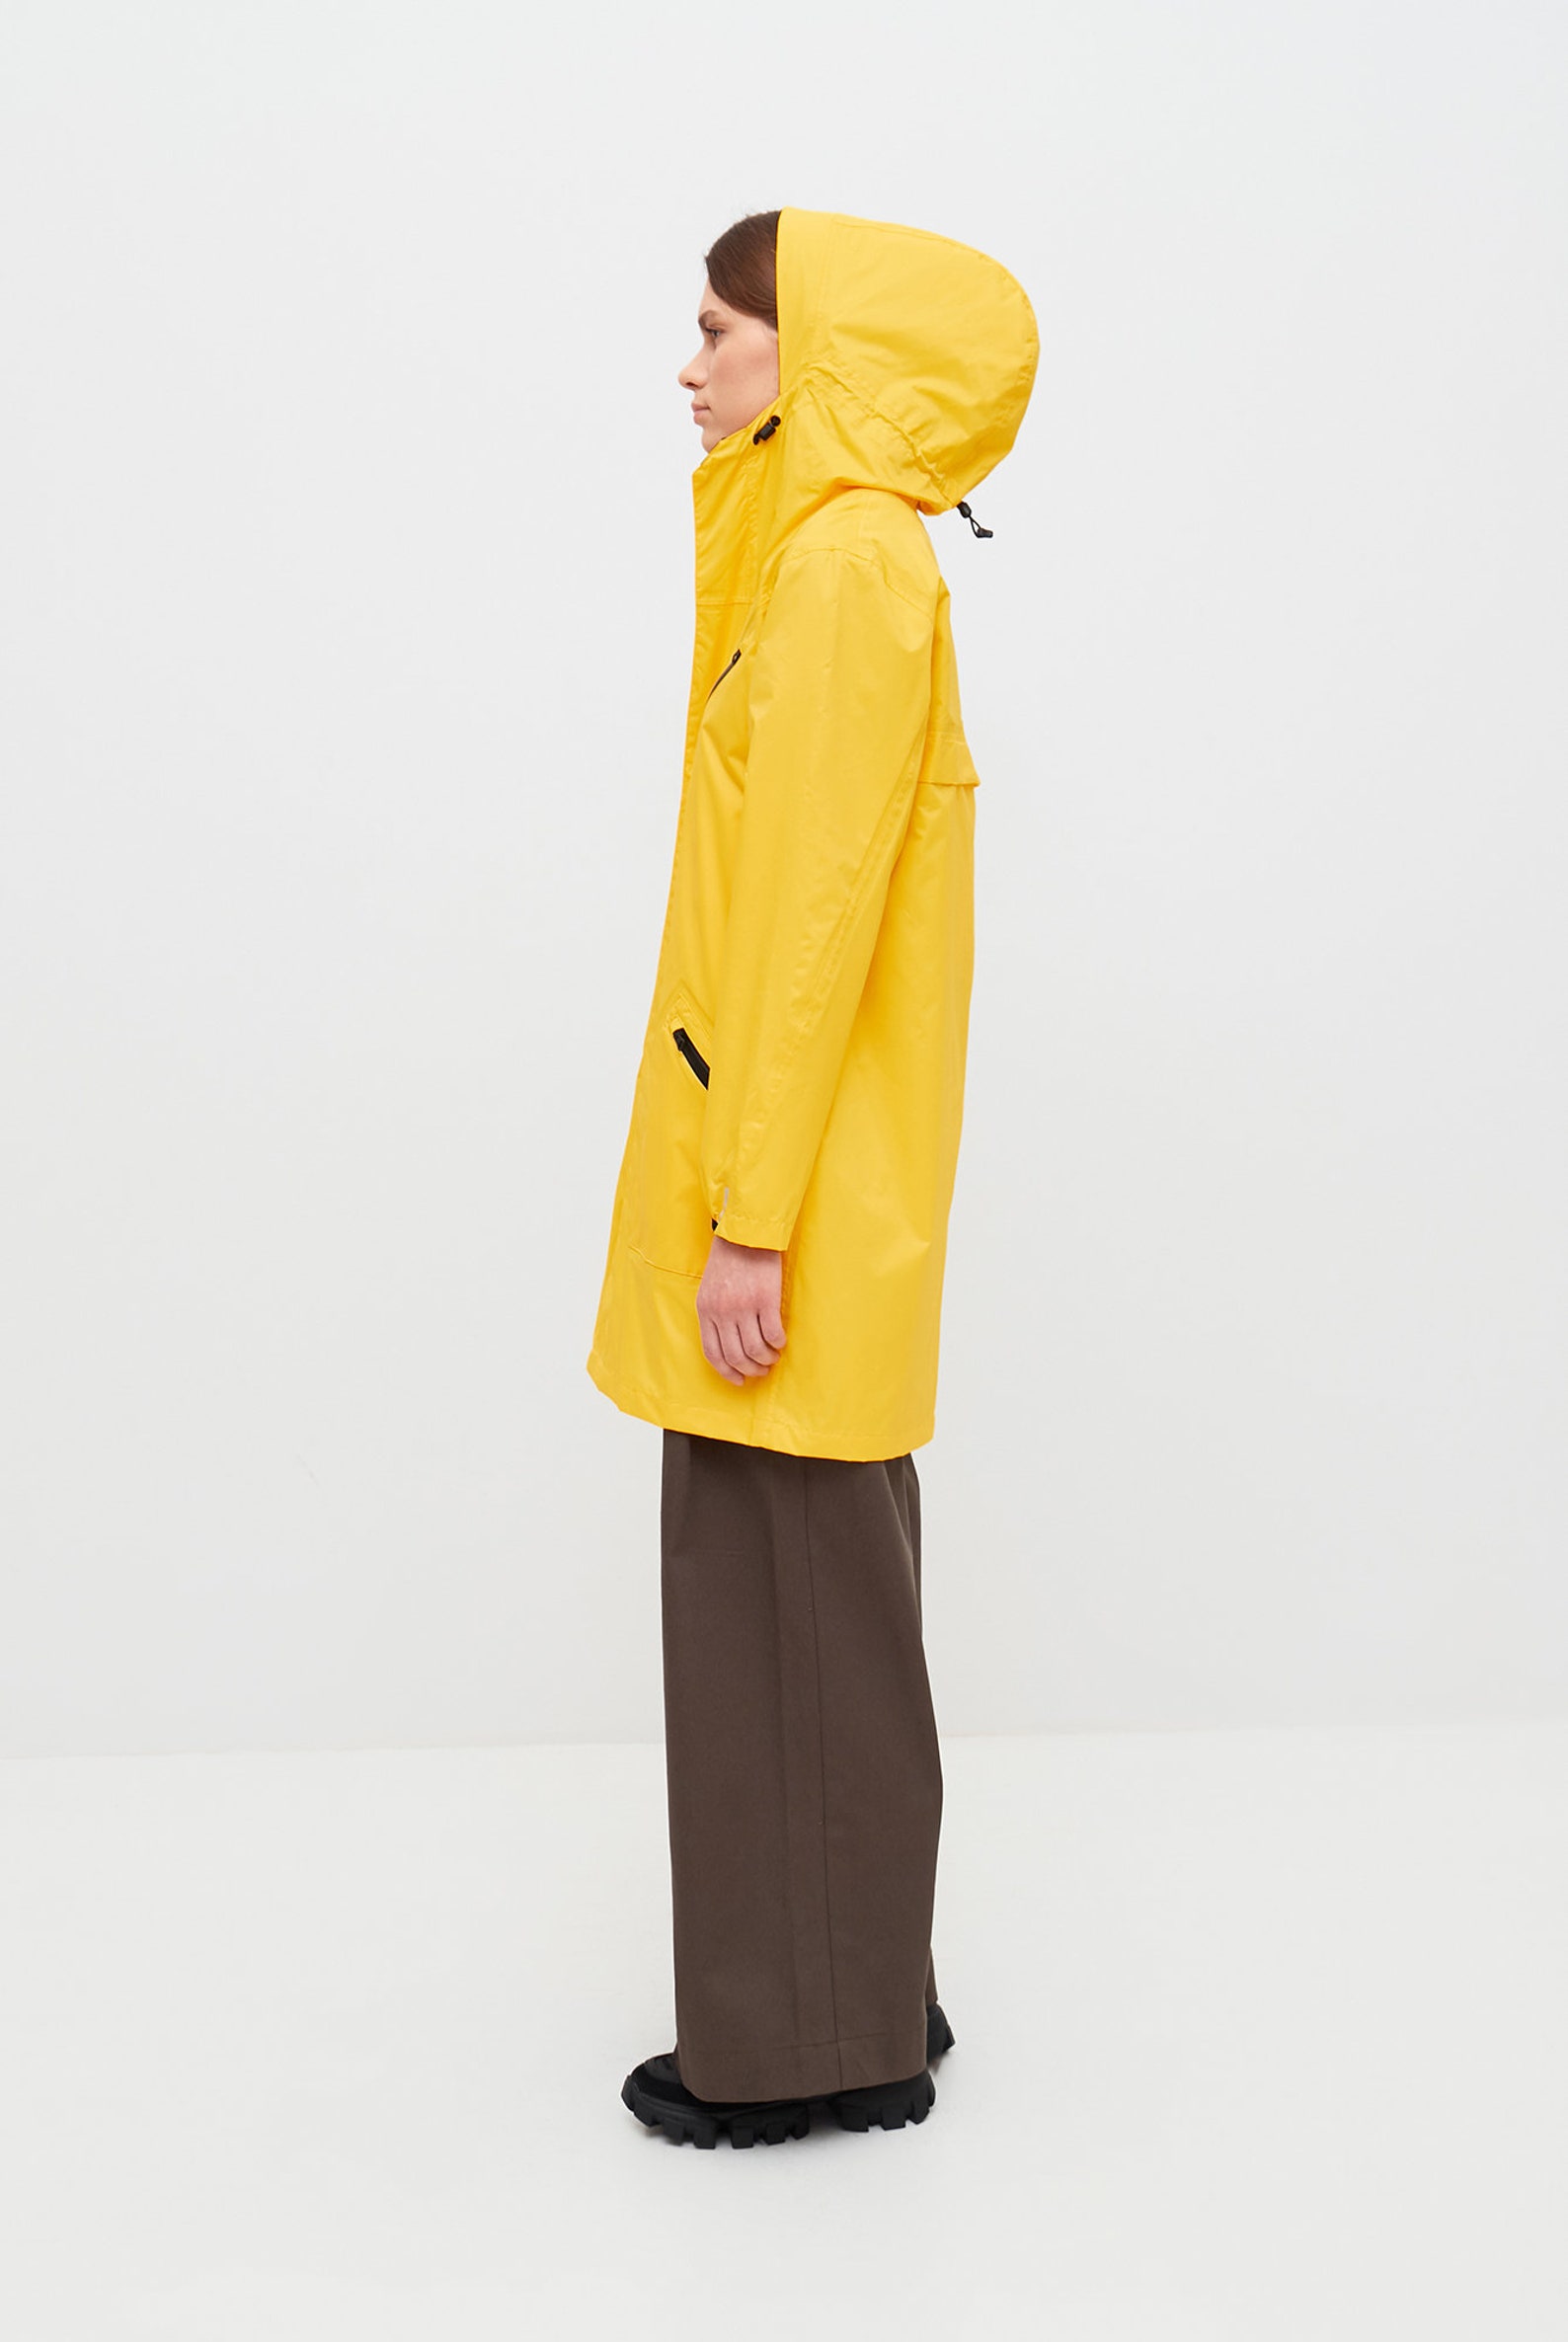 Women Raincoat Hooded Rain Jacket Yellow Rainjacket Outdoor - Etsy UK